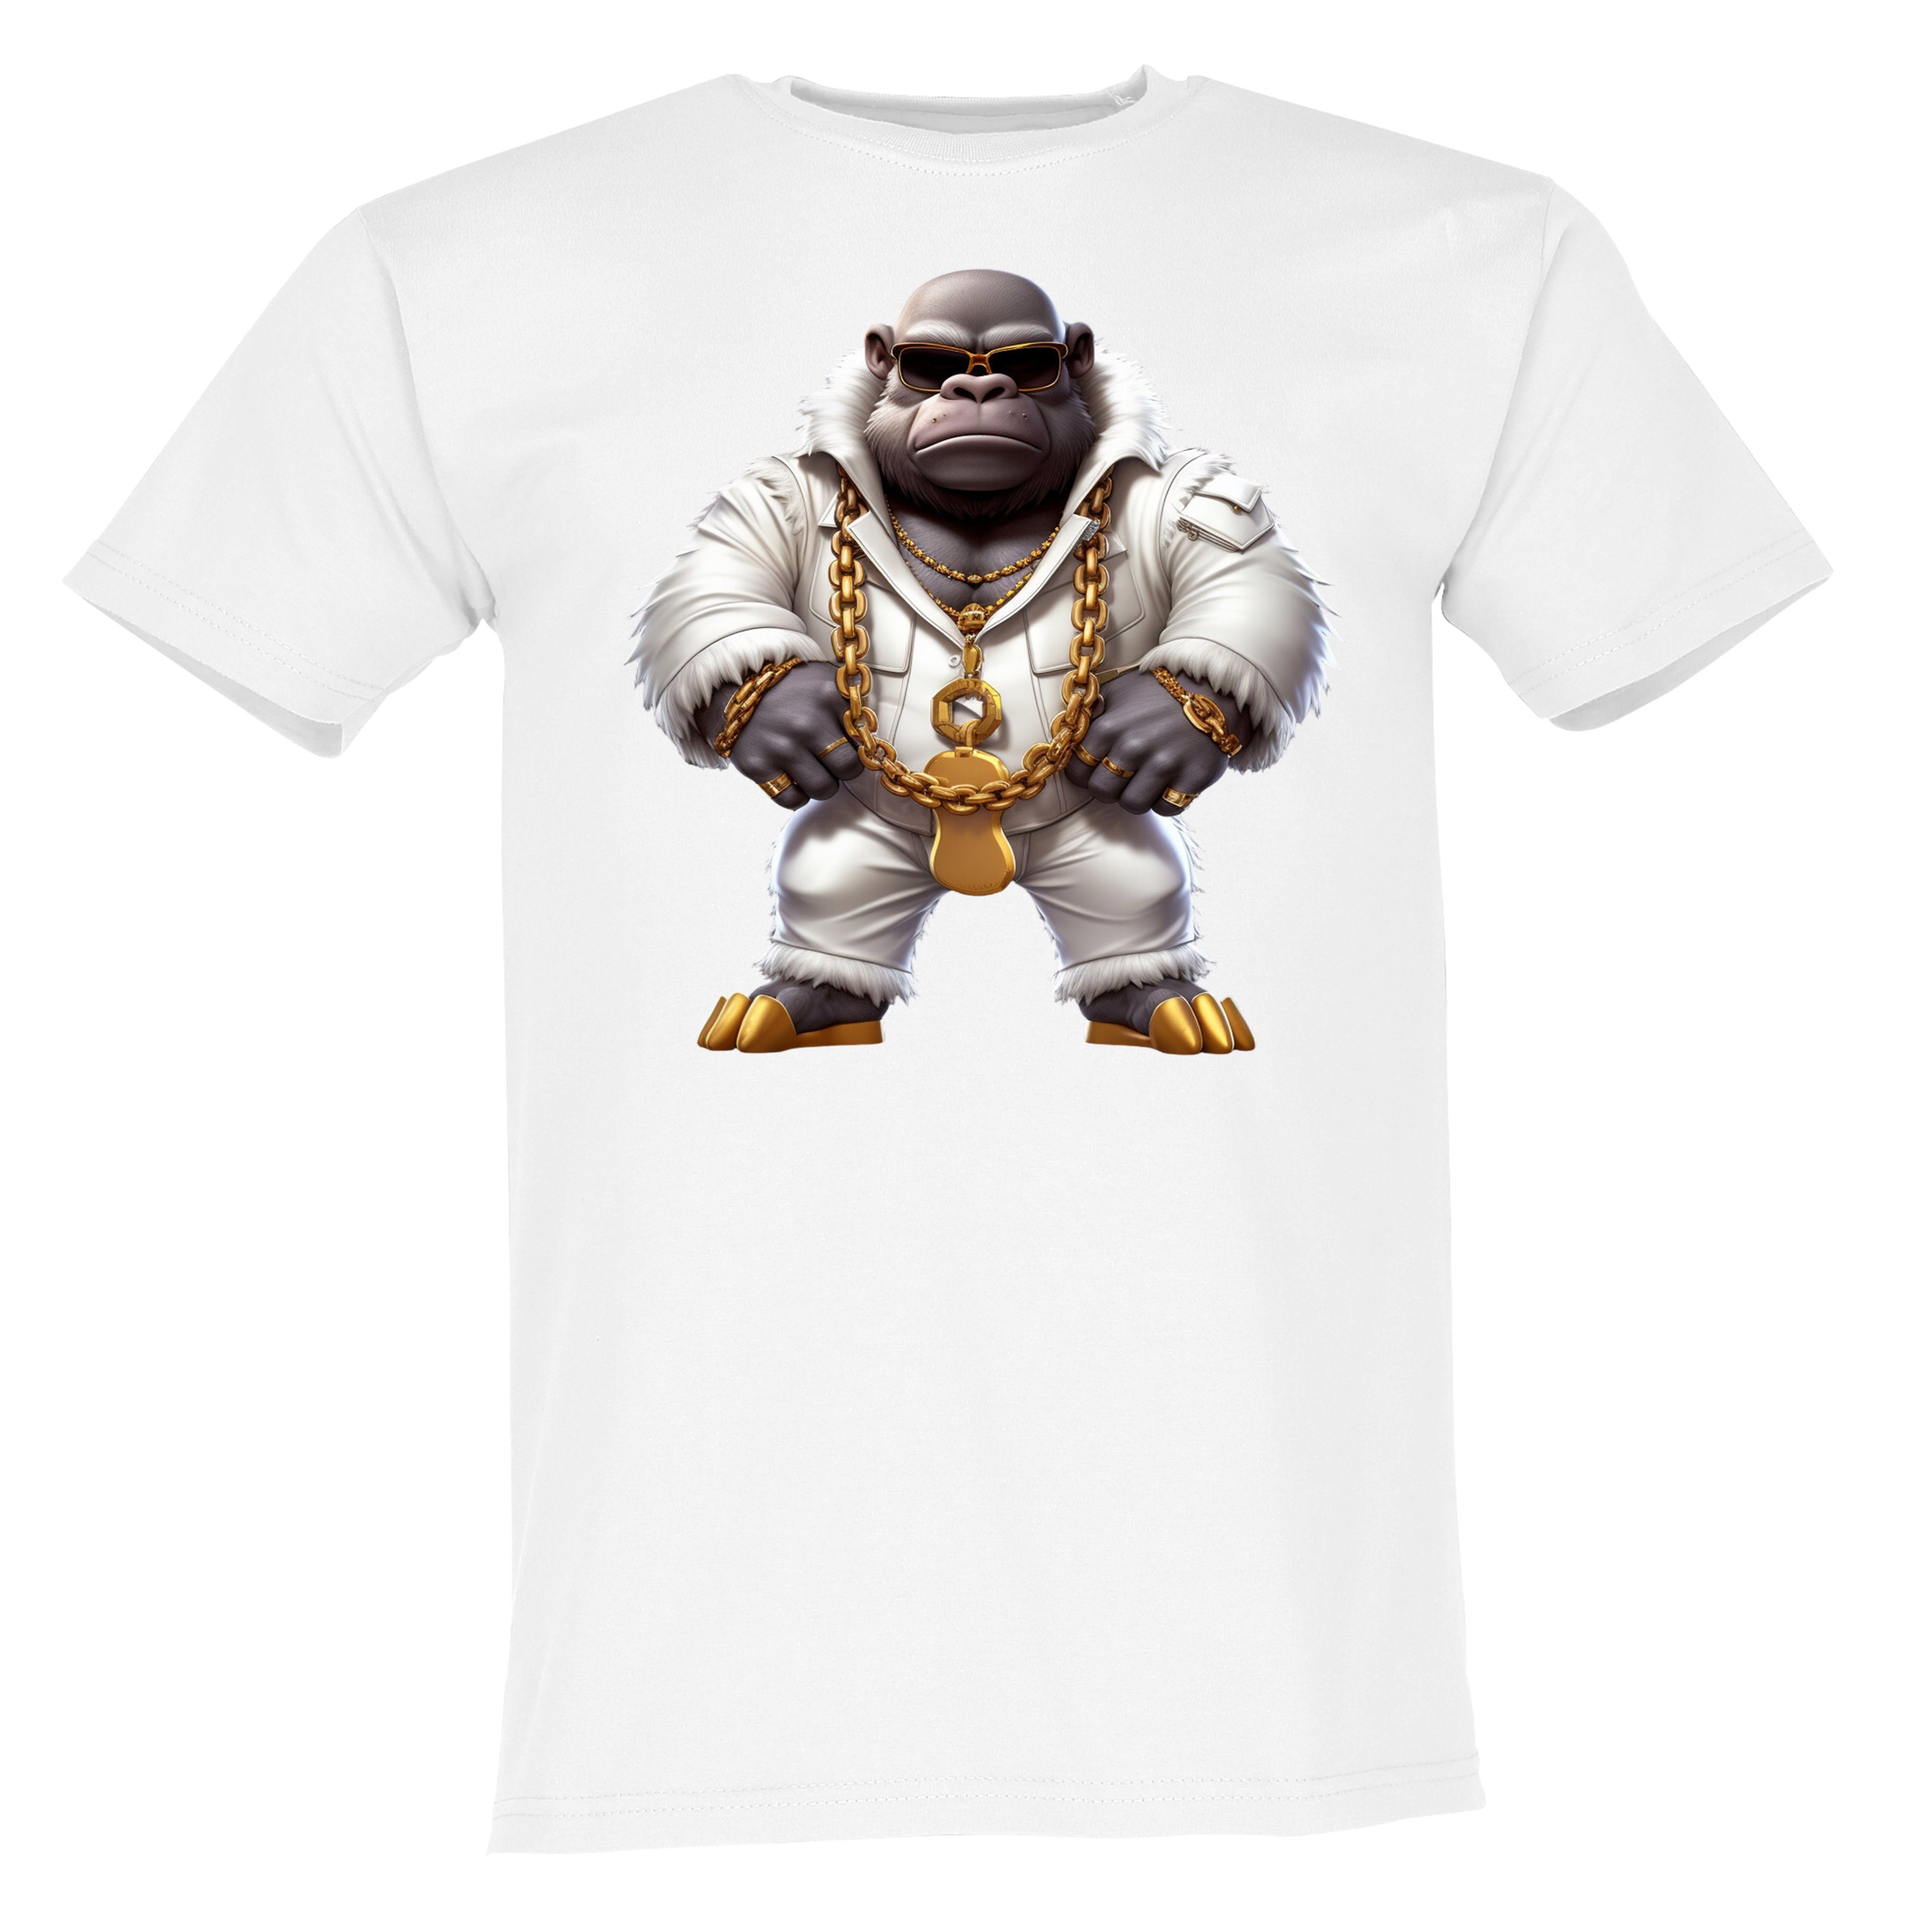 Banco T-Shirt Gangsta Gorilla Mit Goldkette aus 100% Baumwolle Weiß